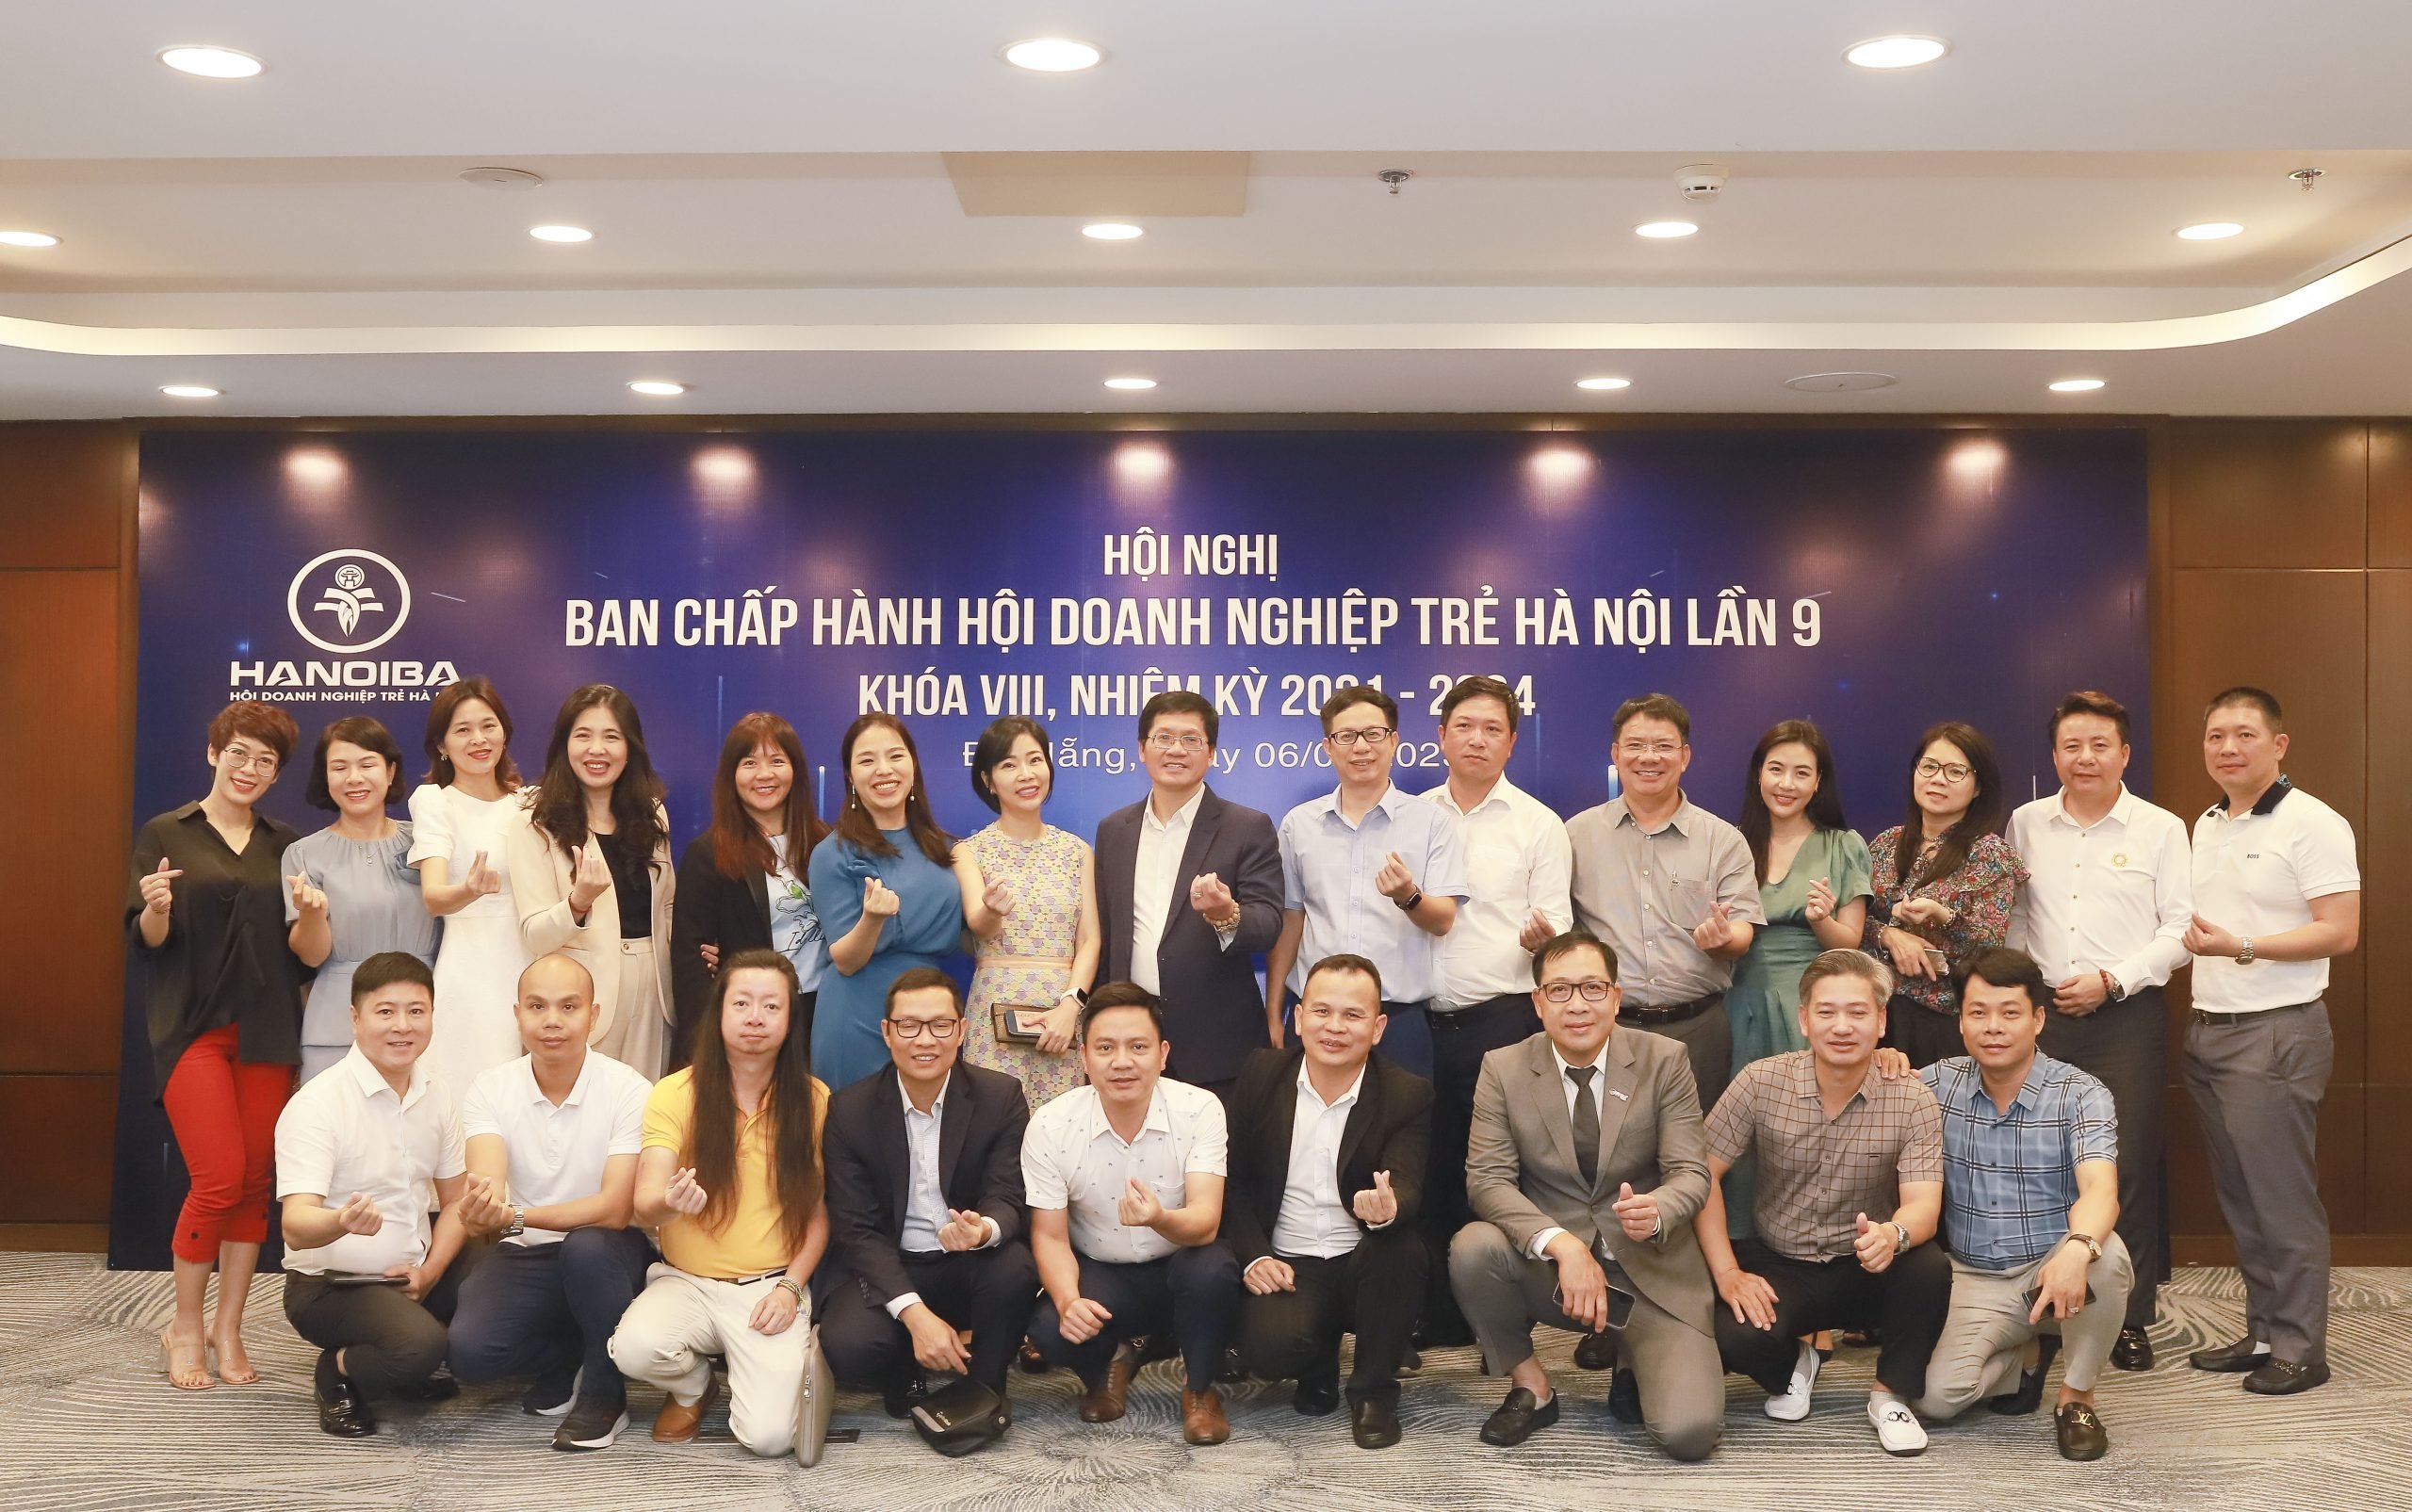 Các thành viên Ban Chấp hành Hội doanh nghiệp trẻ Hà Nội lần 9, khóa VIII, nhiệm kỳ 2021 - 2024